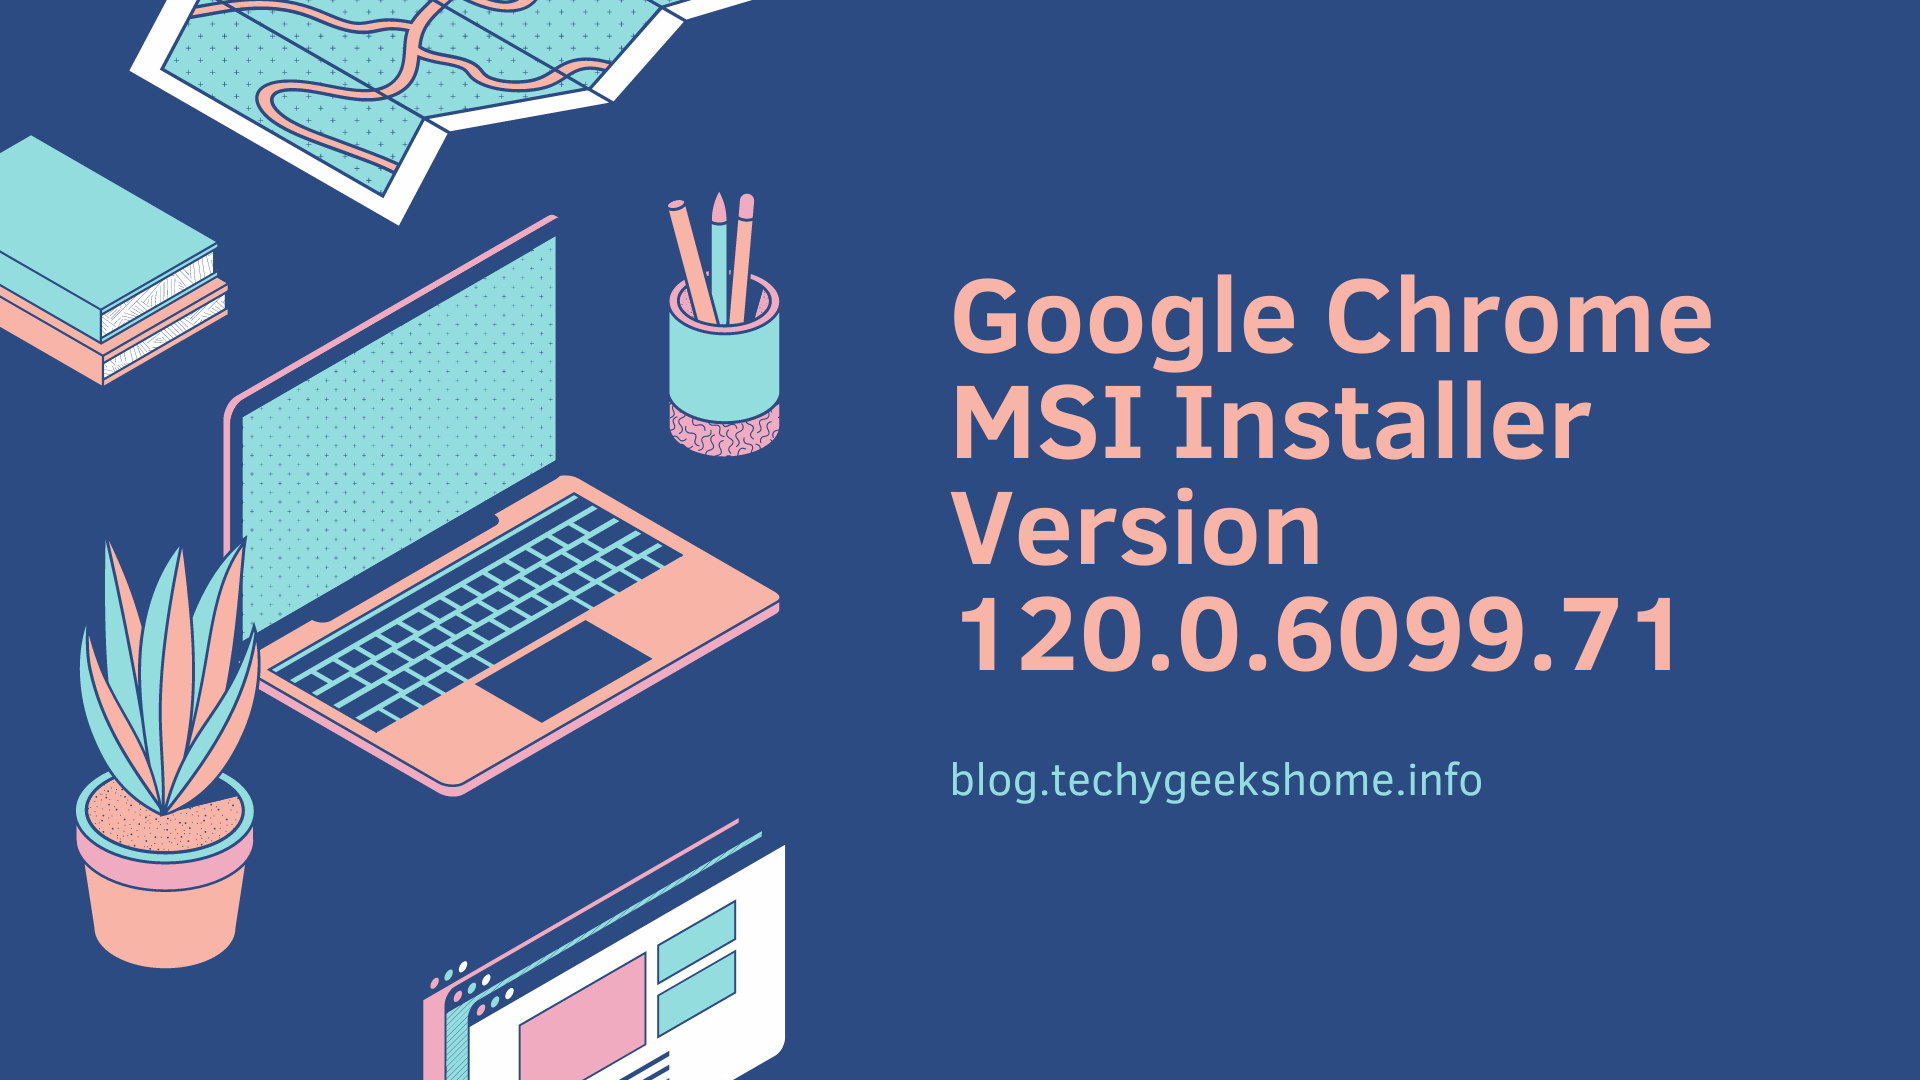 Google Chrome MSI Installer Version 120.0.6099.71